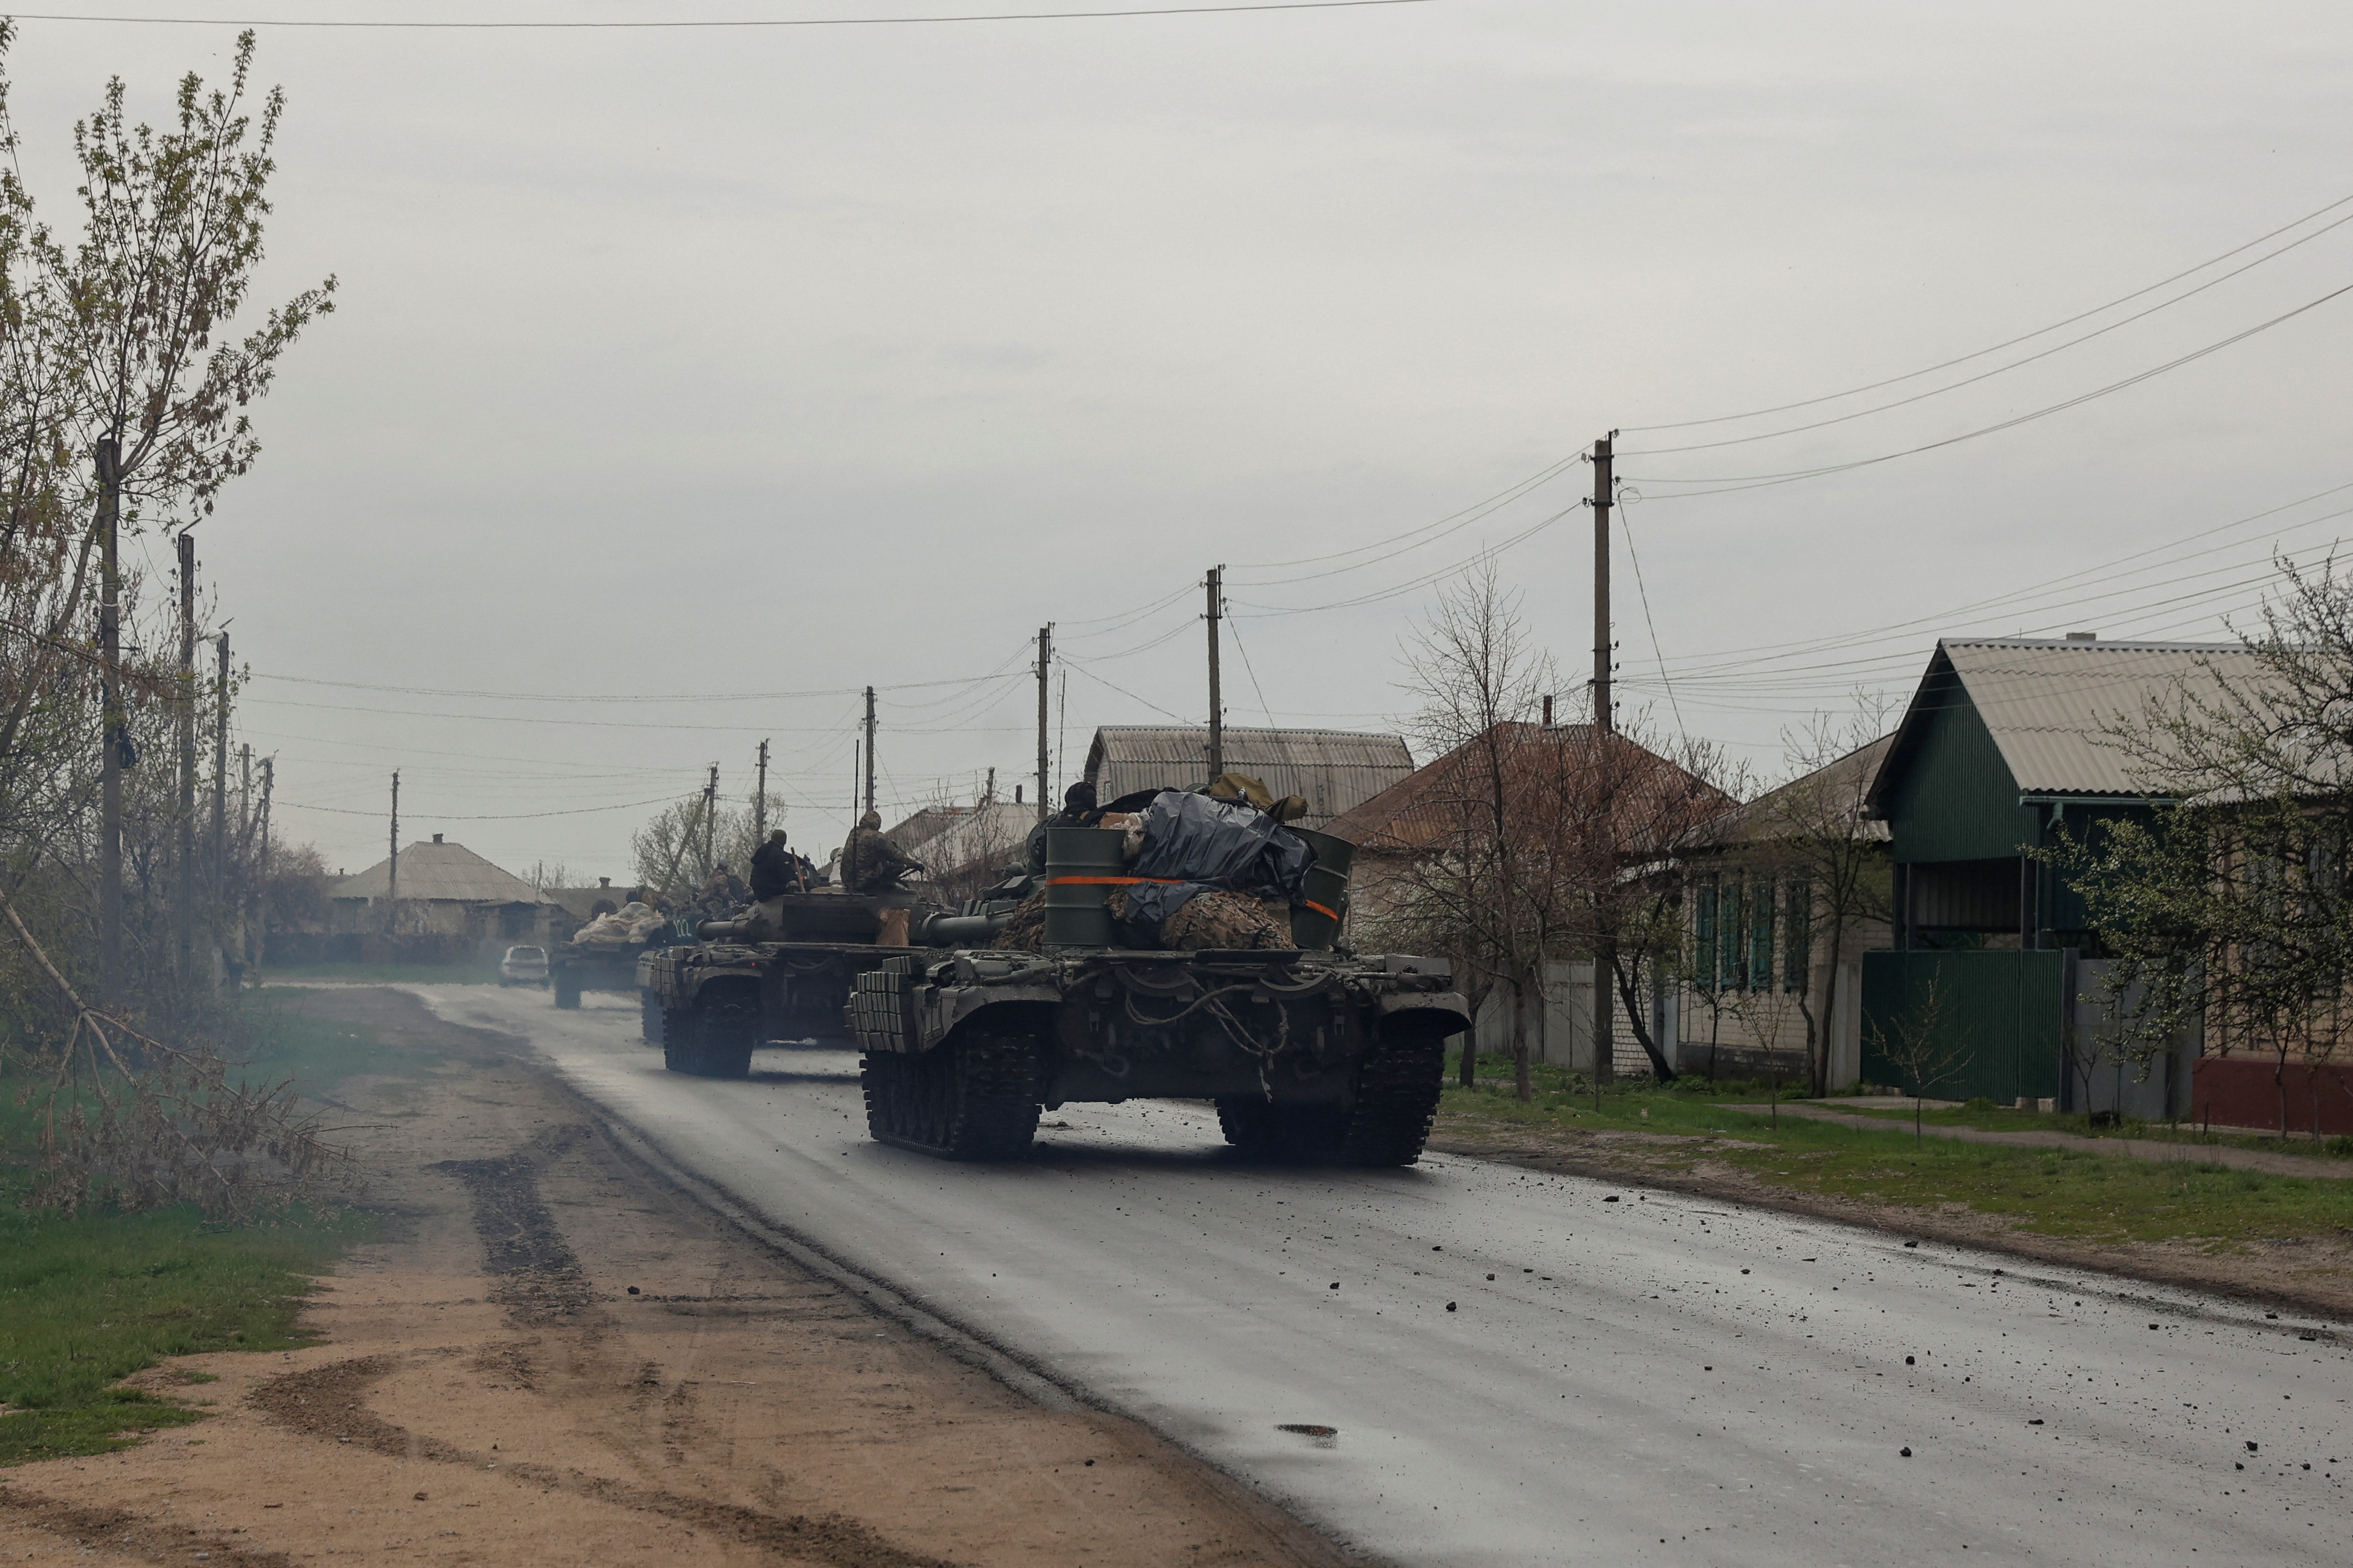 Tanques de las Fuerzas Armadas de Ucrania recorren una calle de un pueblo en la región de Donetsk (REUTERS/Serhii Nuzhnenko)